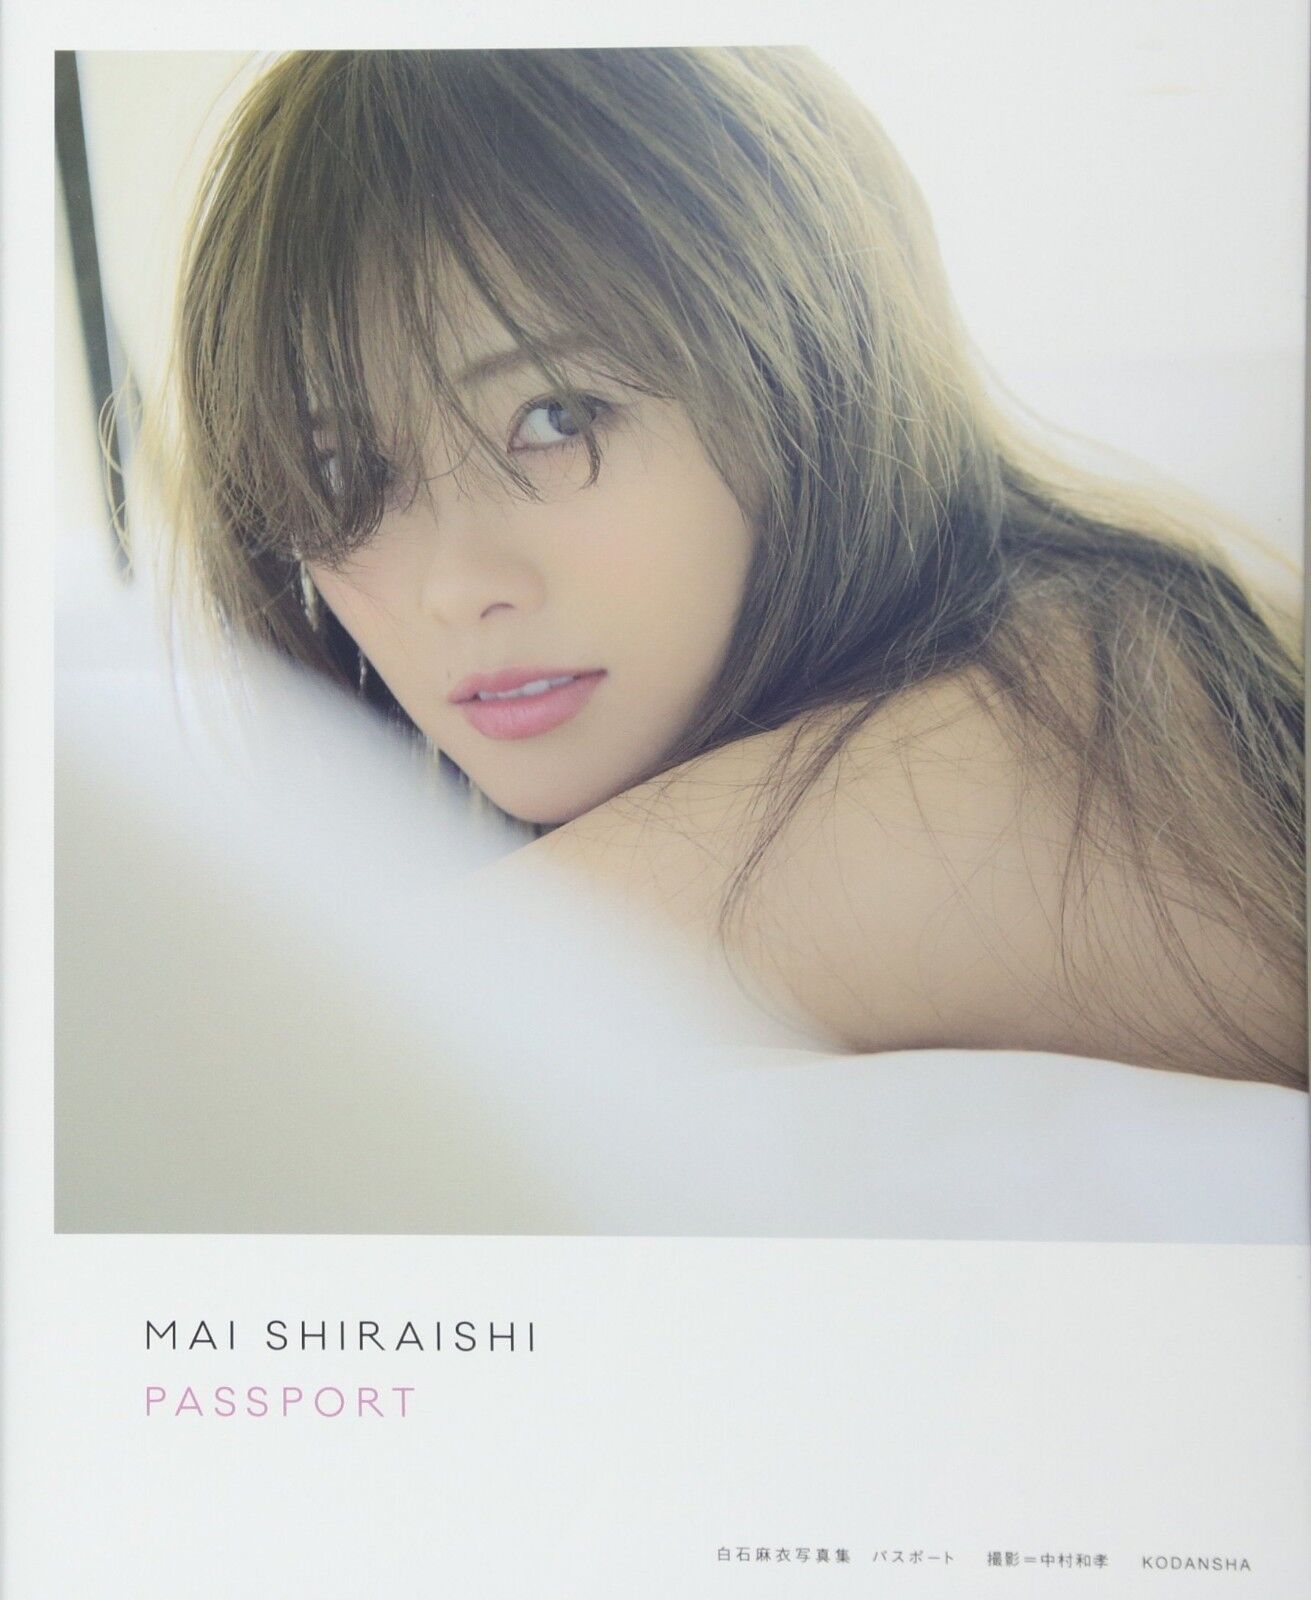 Mai Shiraishi Cute Girl Photos Passport Photo Album Book Japan Idol Kawaii